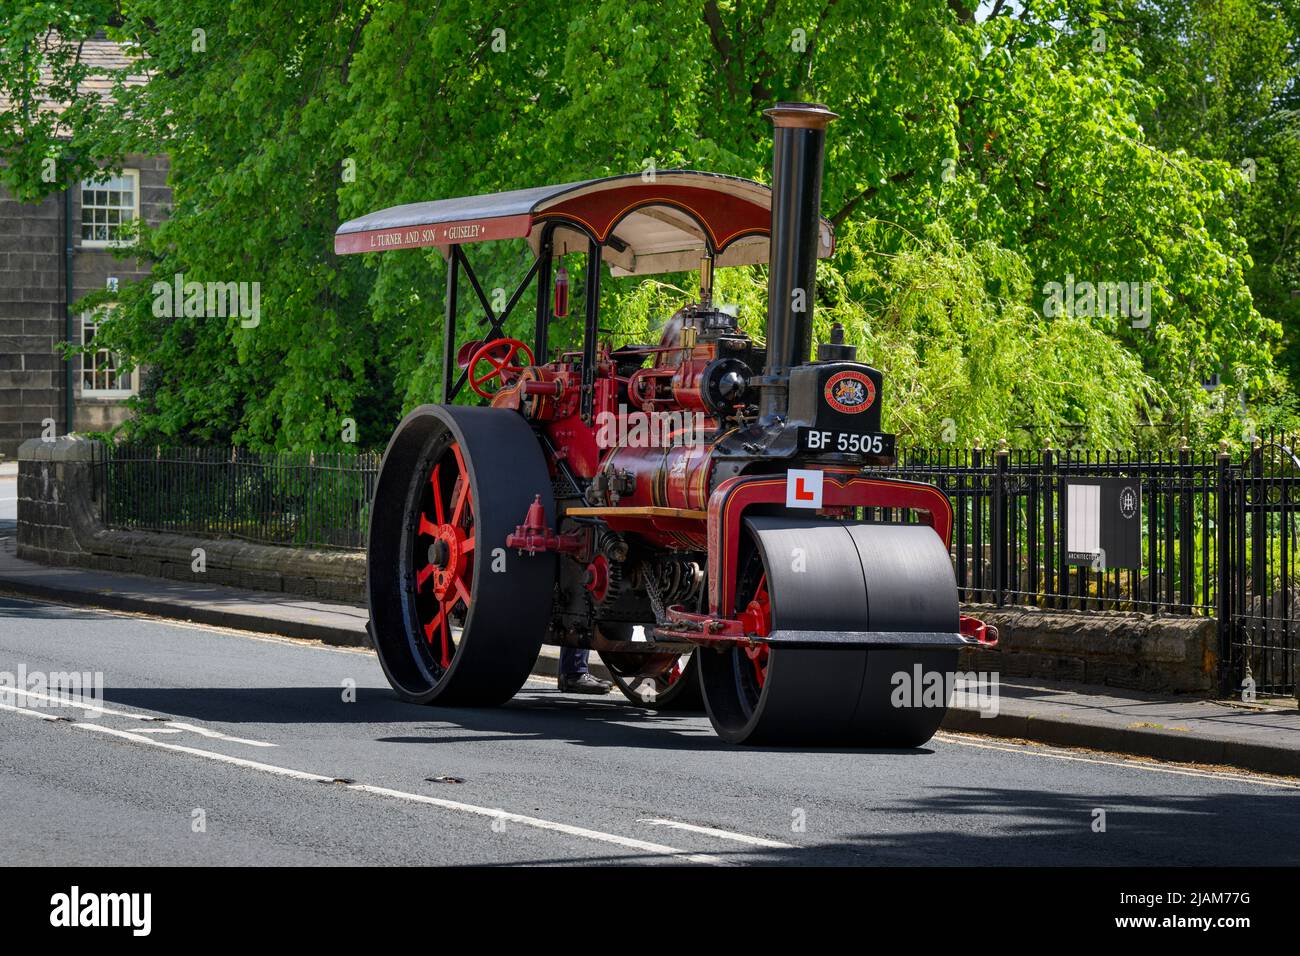 Rot-schwarzes, stationäres, schweres Dampffahrzeug, das am Straßenrand geparkt ist (L-Schild und Kennzeichen vorne) - Burley-in-Wharfedale, West Yorkshire England, Großbritannien. Stockfoto